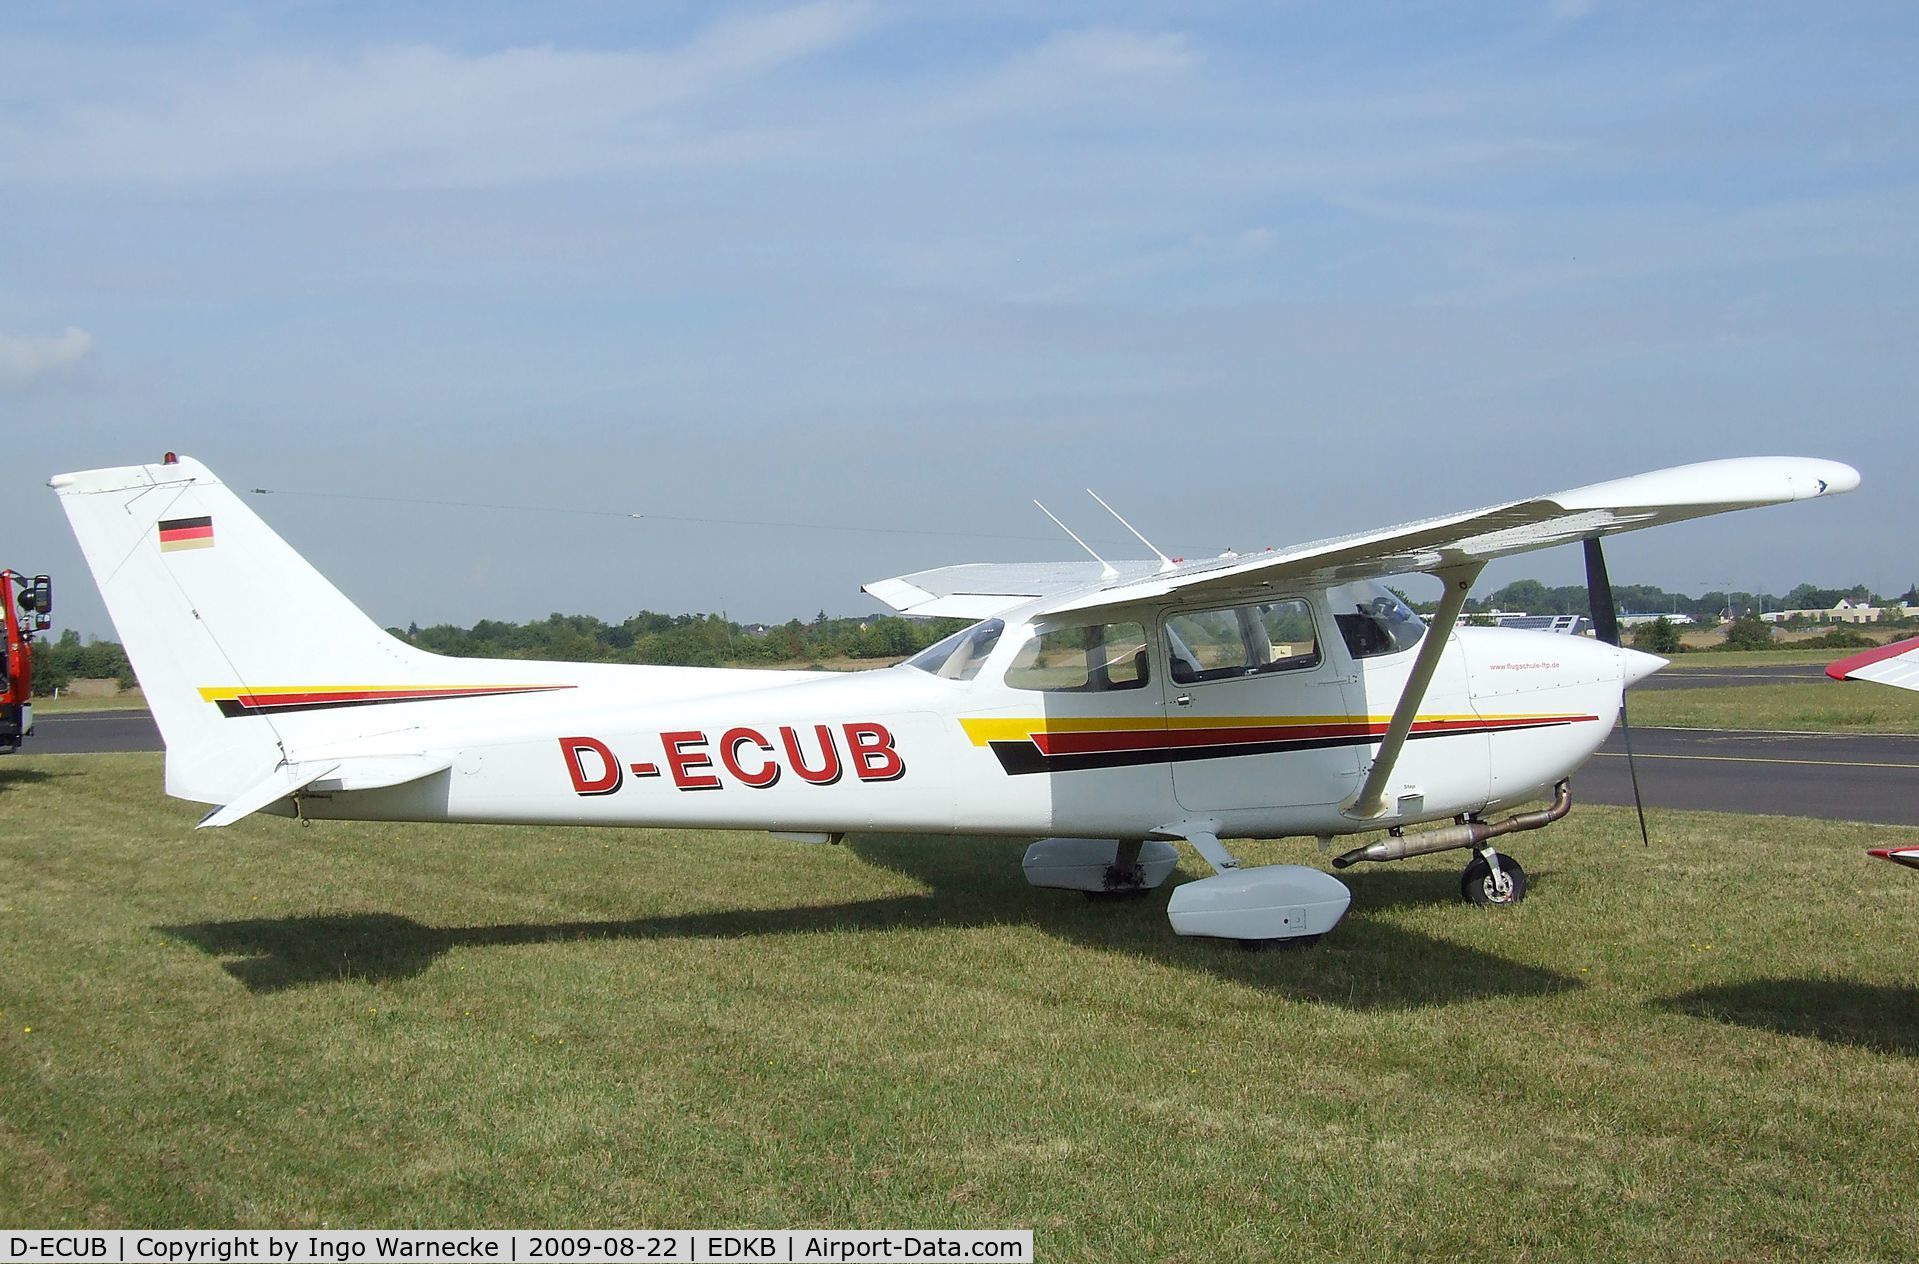 D-ECUB, 1979 Reims F172N Skyhawk C/N 1823, Cessna (Reims) F172N Skyhawk II at the Bonn-Hangelar centennial jubilee airshow